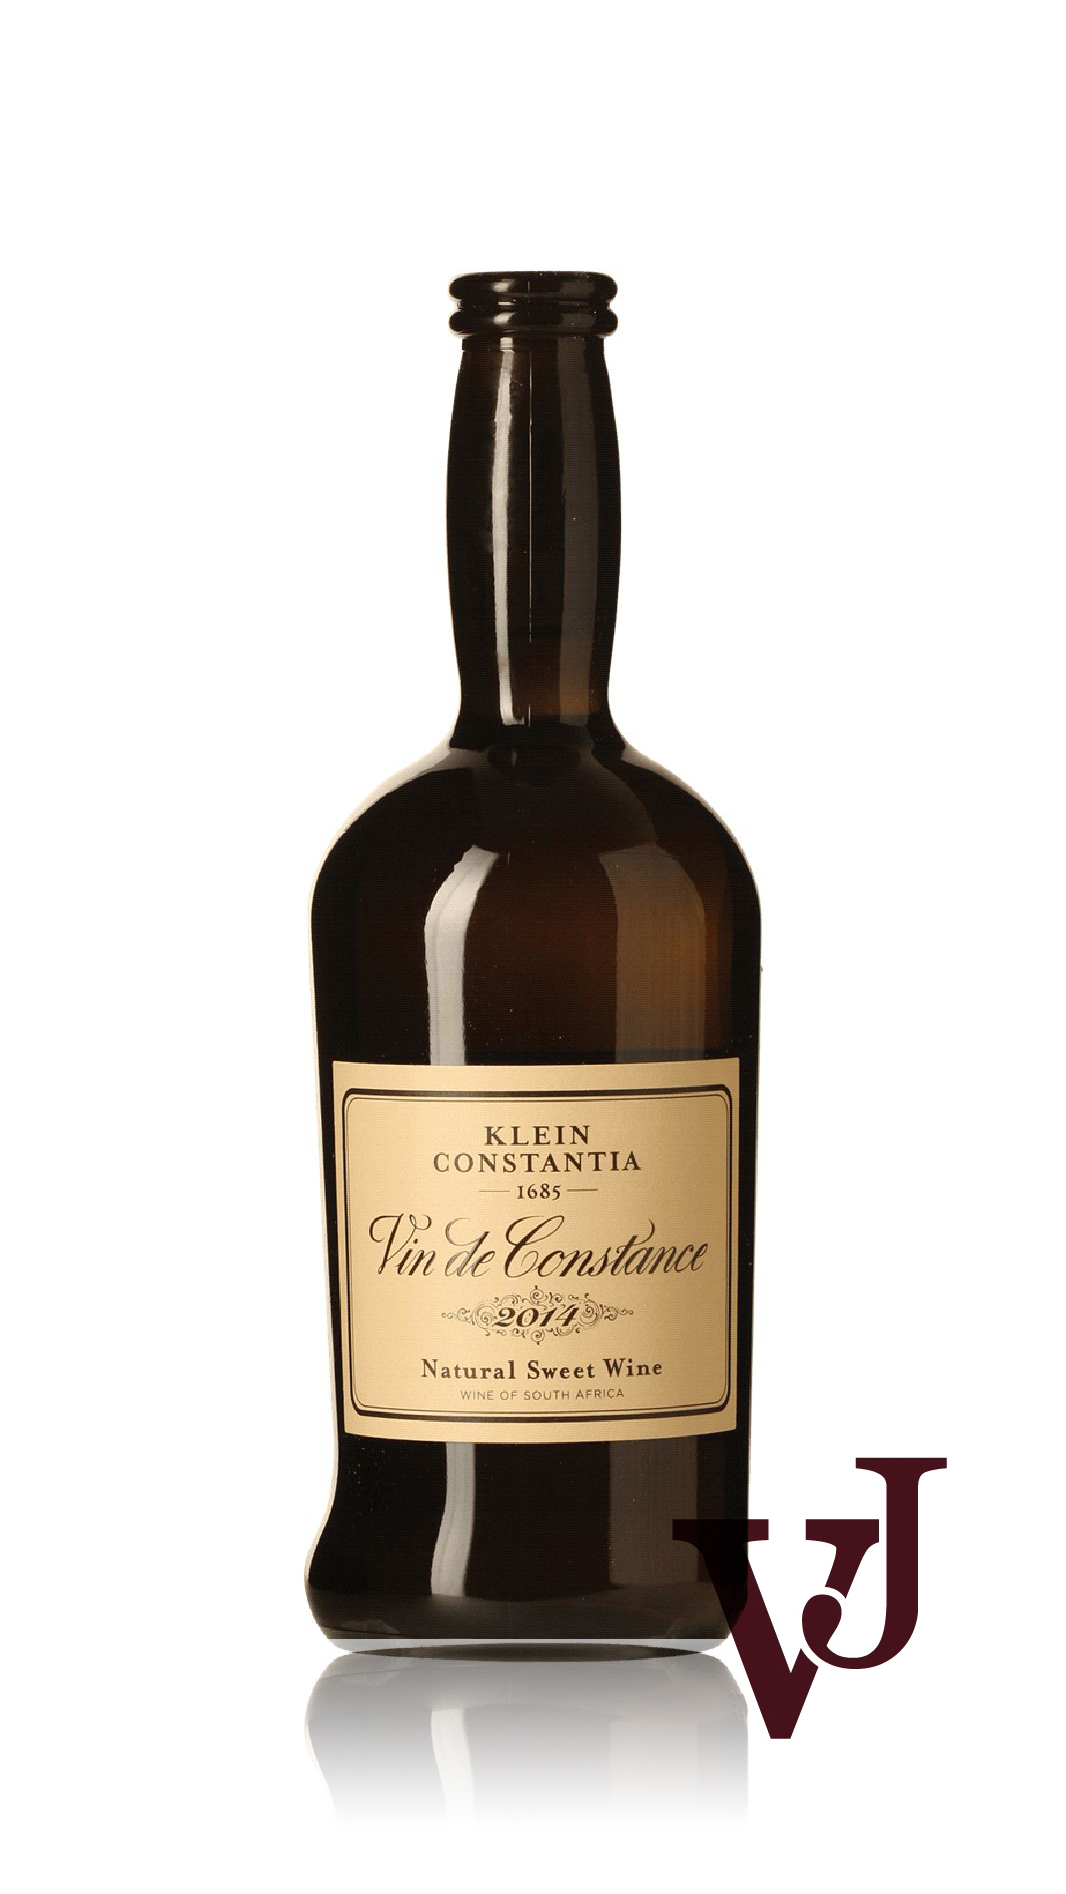 Övrigt vin - Klein Constantia Vin de Constance artikel nummer 9602202 från producenten Klein Constantia från området Sydafrika